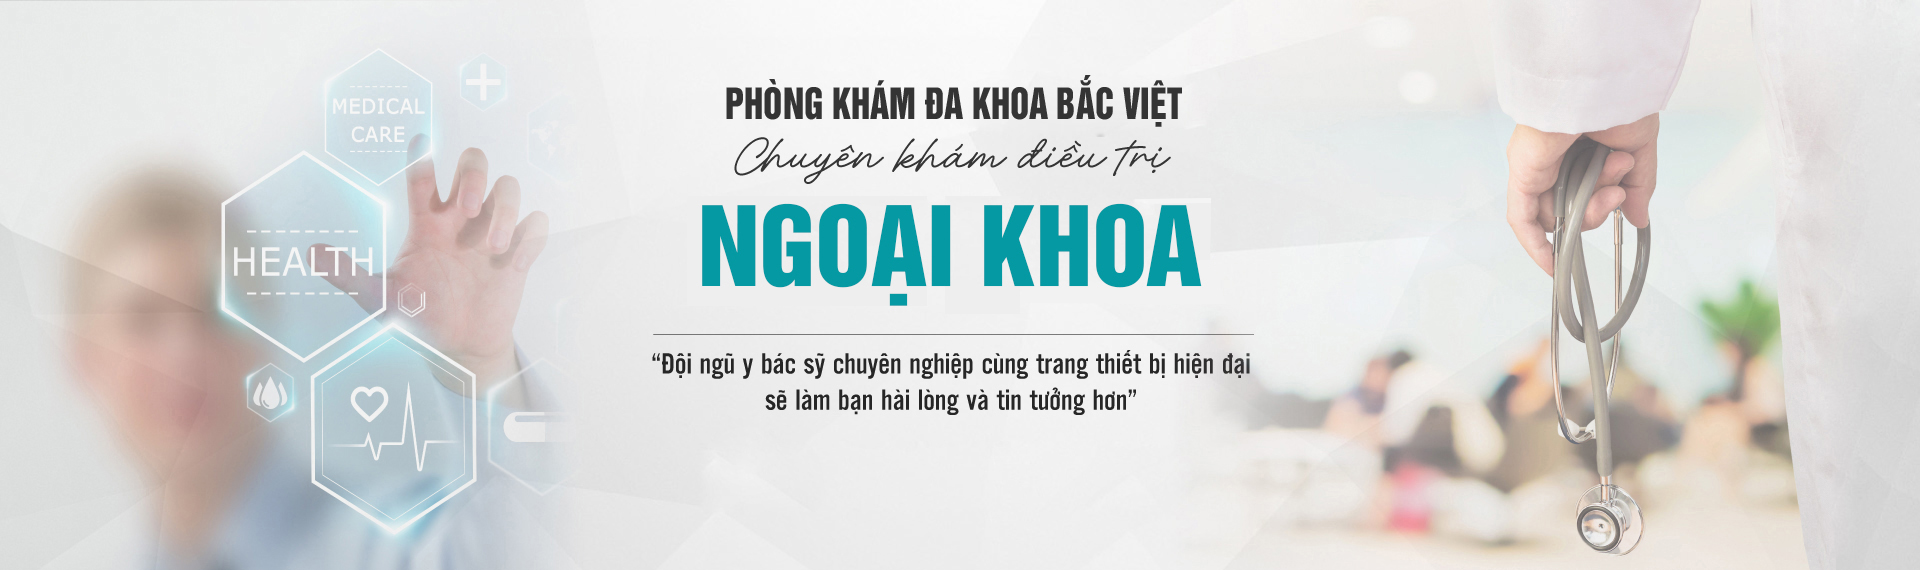 Chia sẻ chân thực của người bệnh về phòng khám đa khoa Bắc Việt Hà Nội